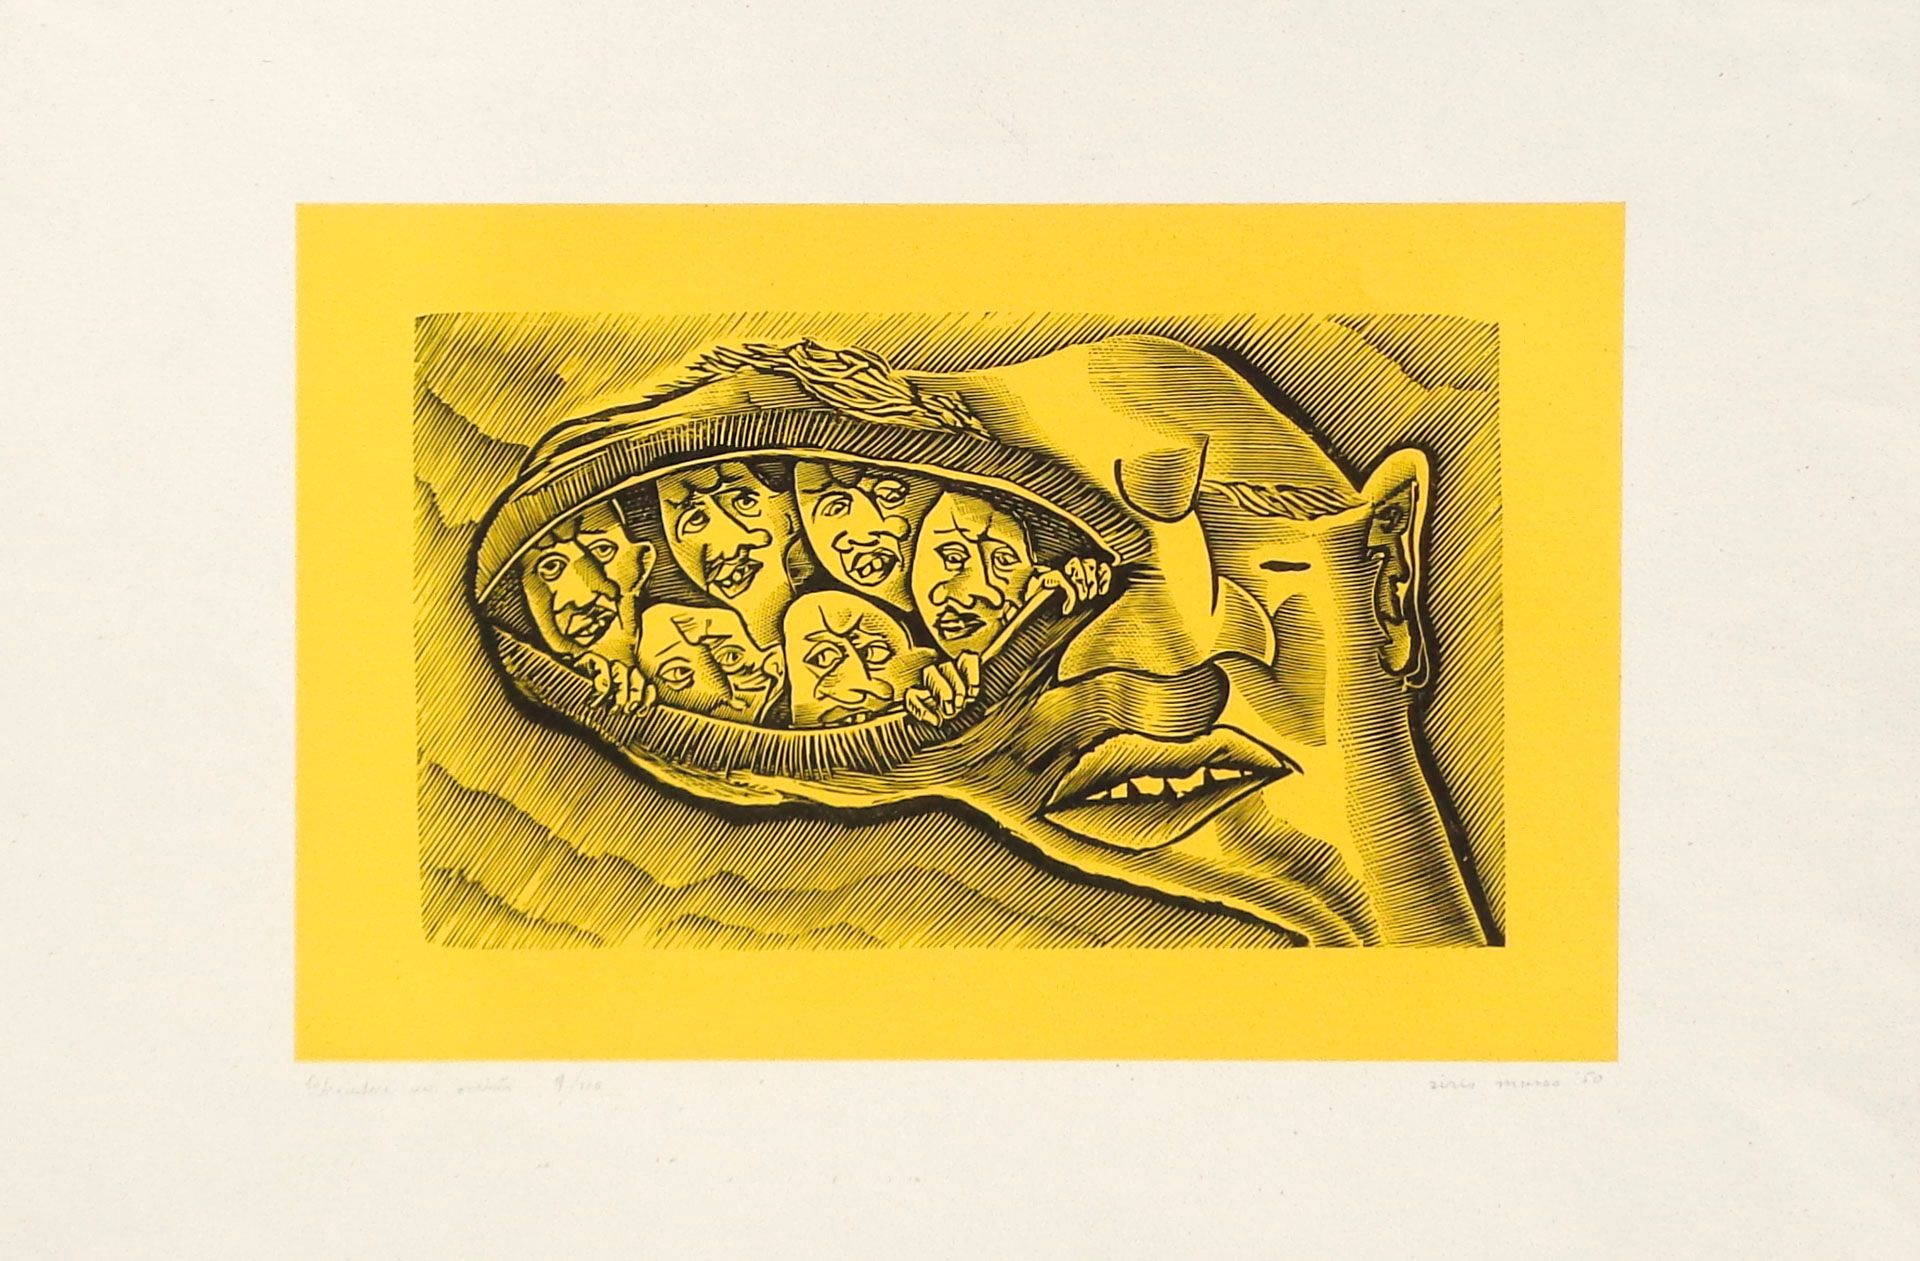 Sirio Musso Chiudere un occhio, 1950; Color lithograph on paper, 34 x 49.8 cm

S&hellip;